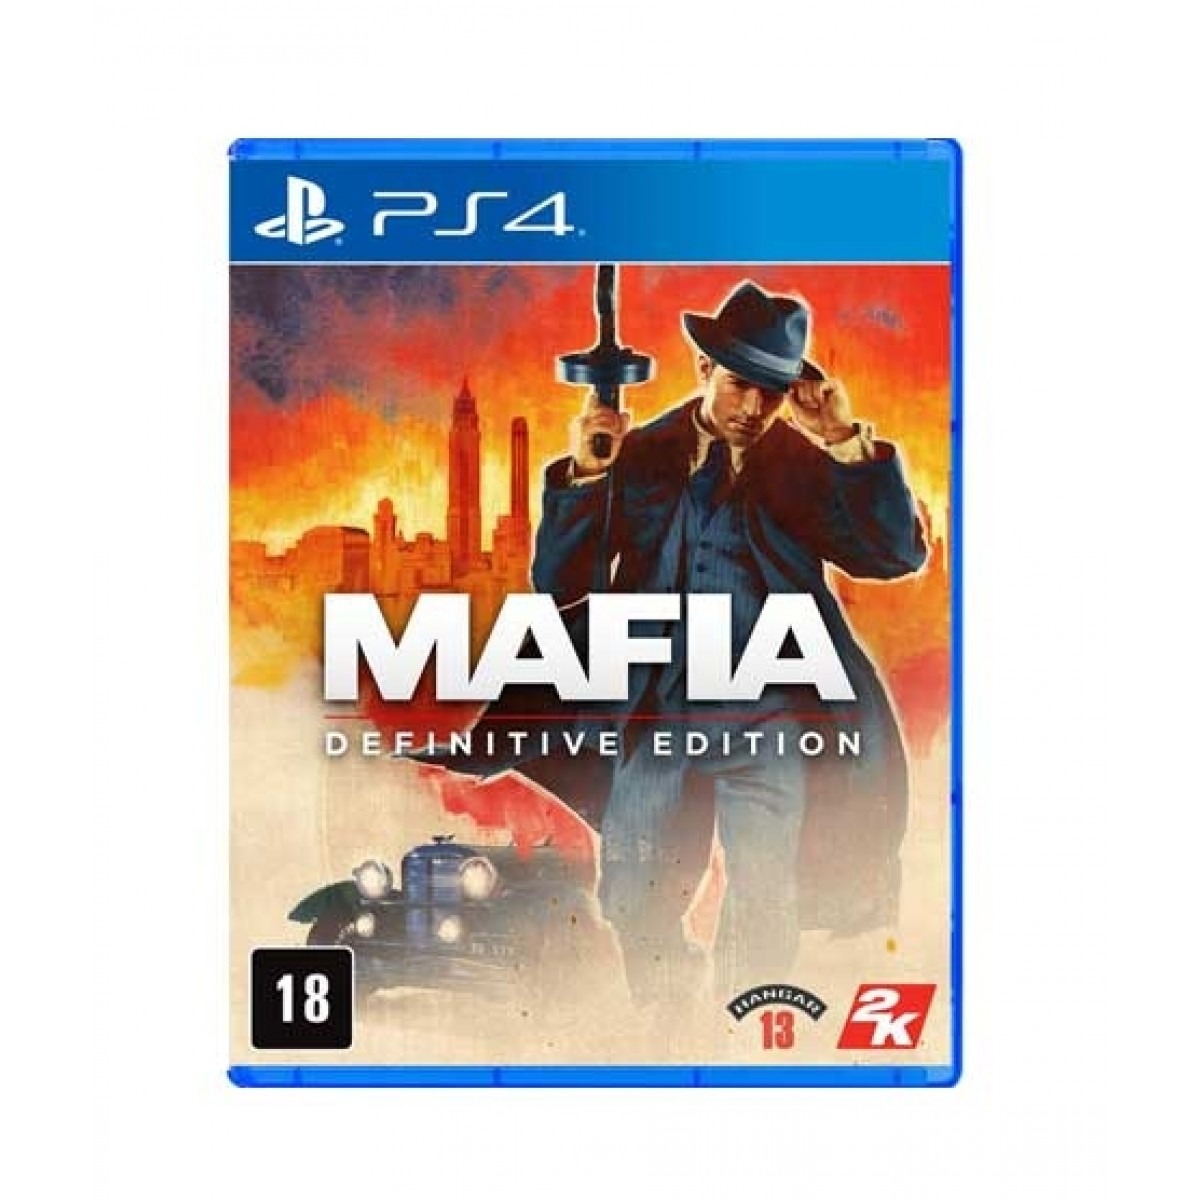 mafia definitive edition ps4 download free